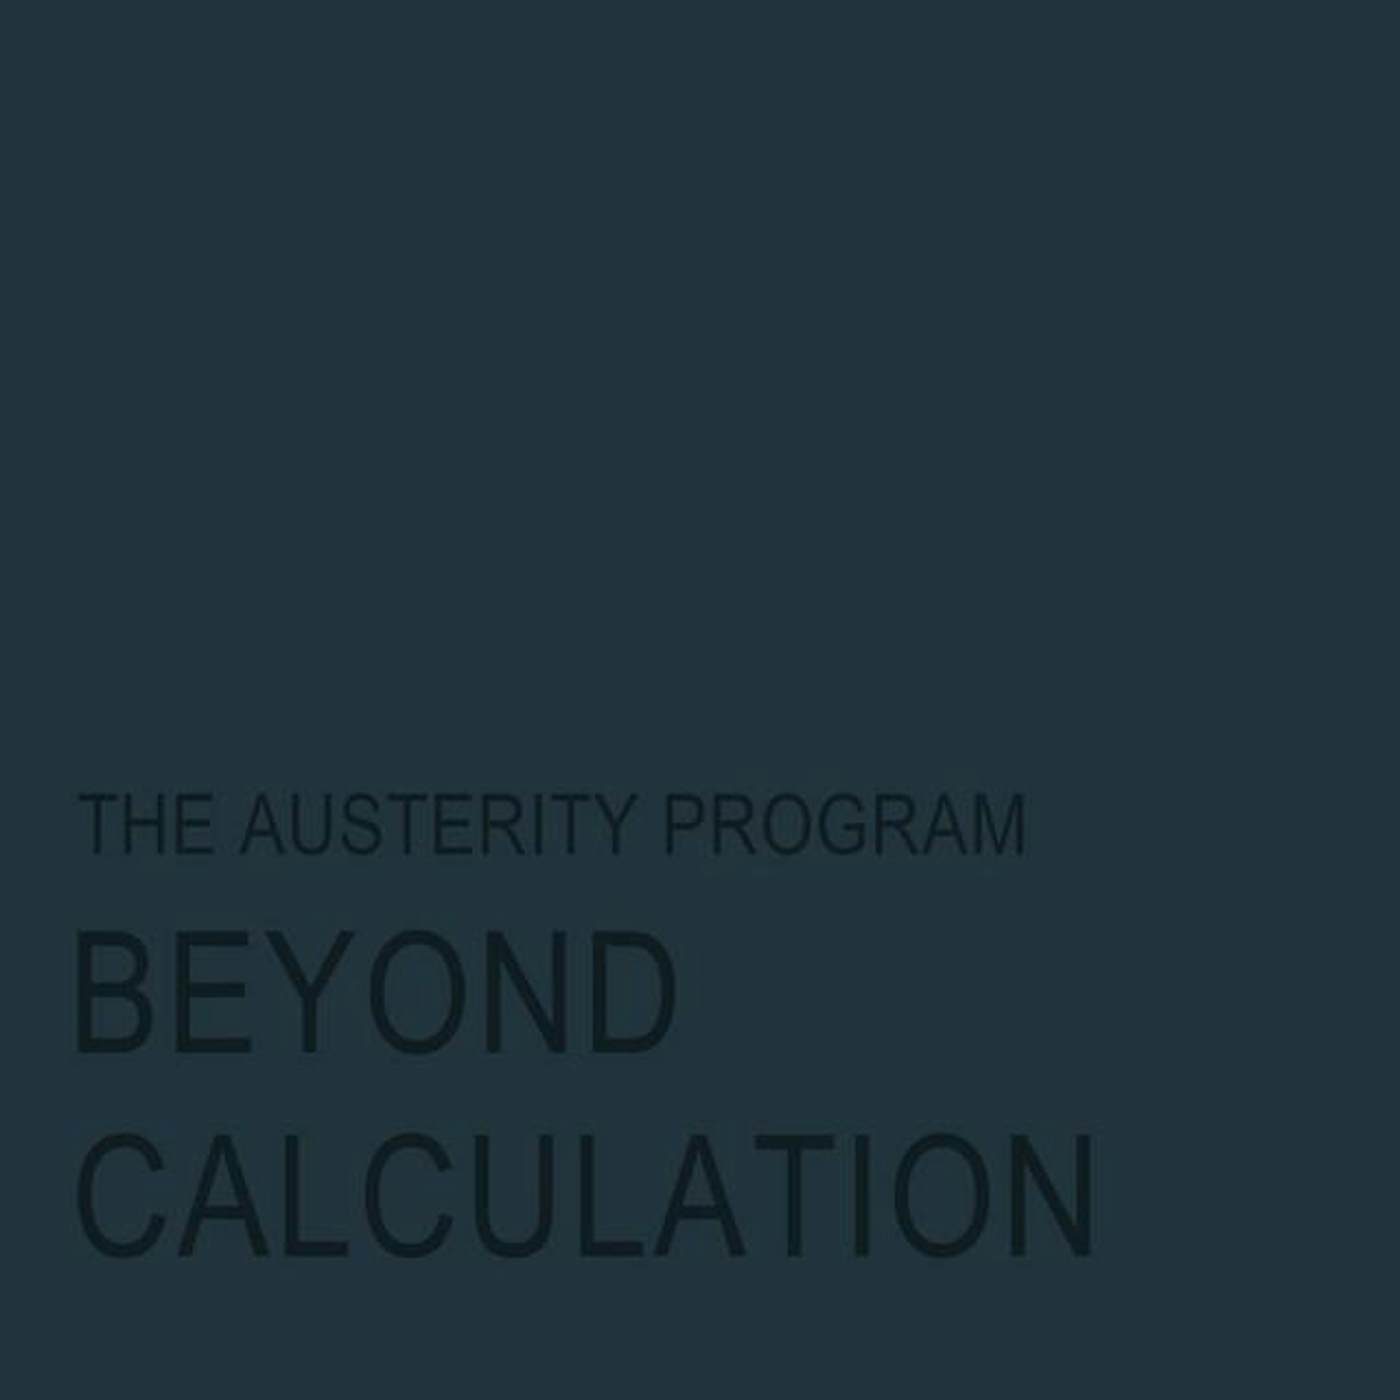 The Austerity Program